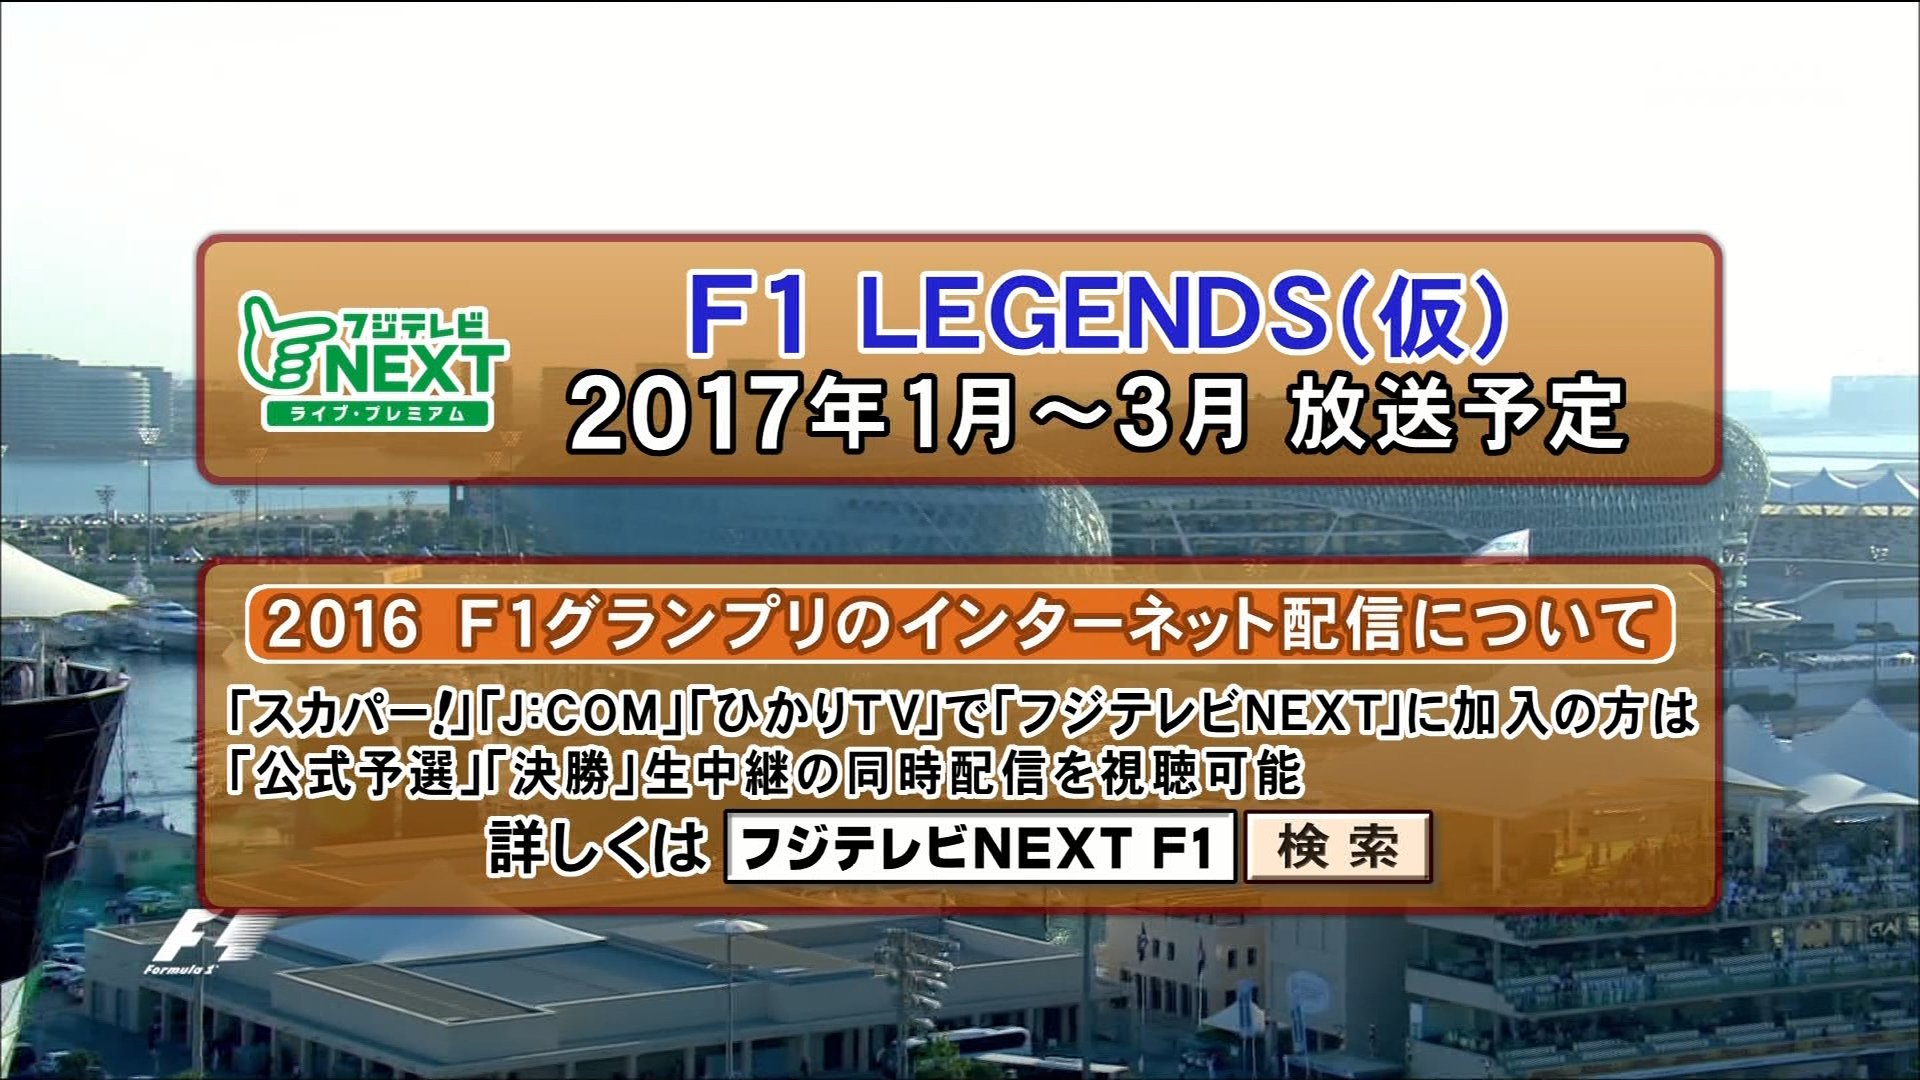 Miya おお F1 Legends F1jp T Co W9ltc2ggvo Twitter